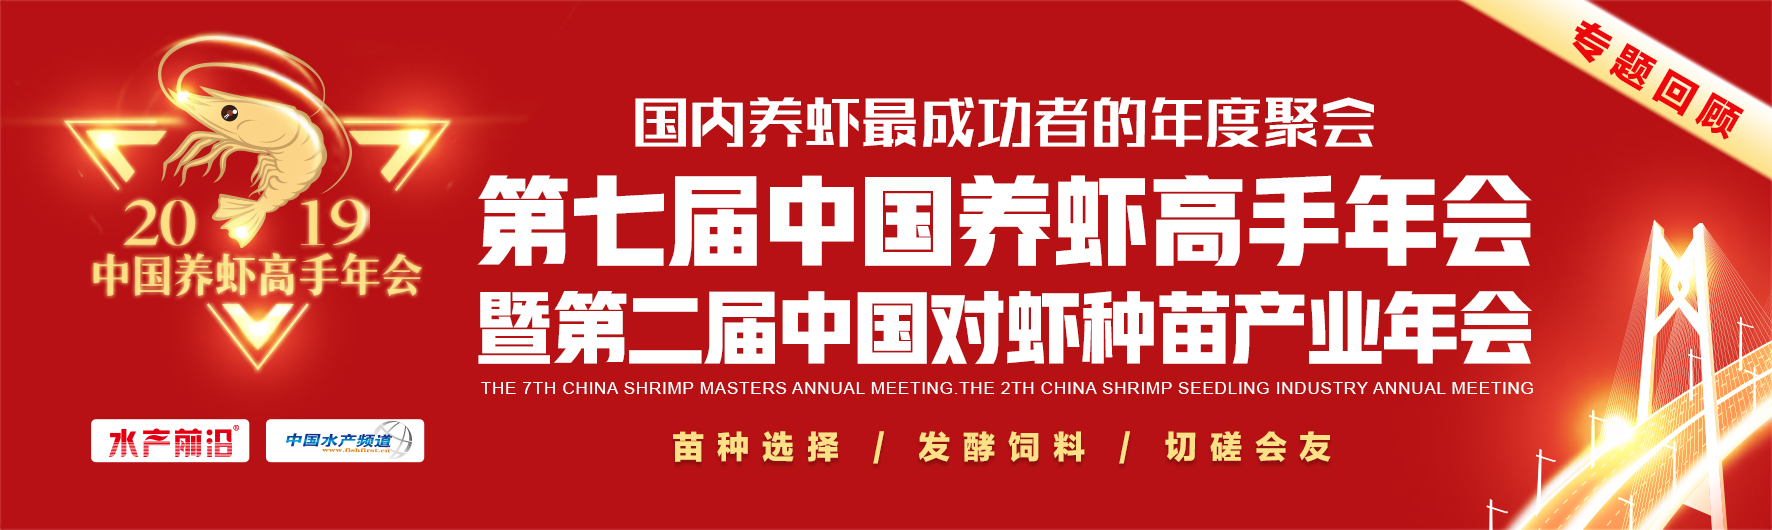 第七届中国养虾高手年会暨第二届中国对虾种苗产业年会